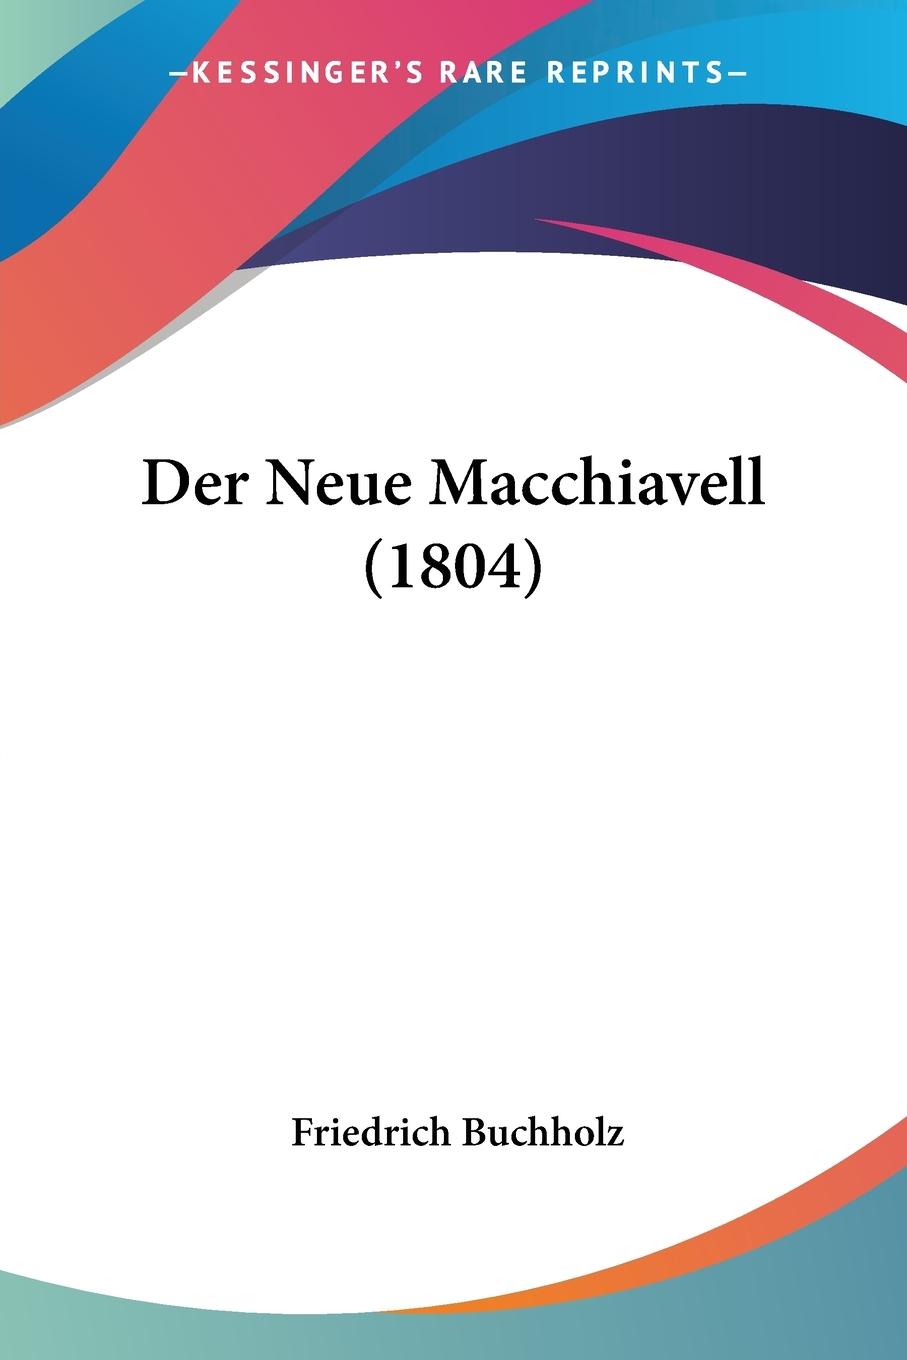 Der Neue Macchiavell (1804) - Buchholz, Friedrich